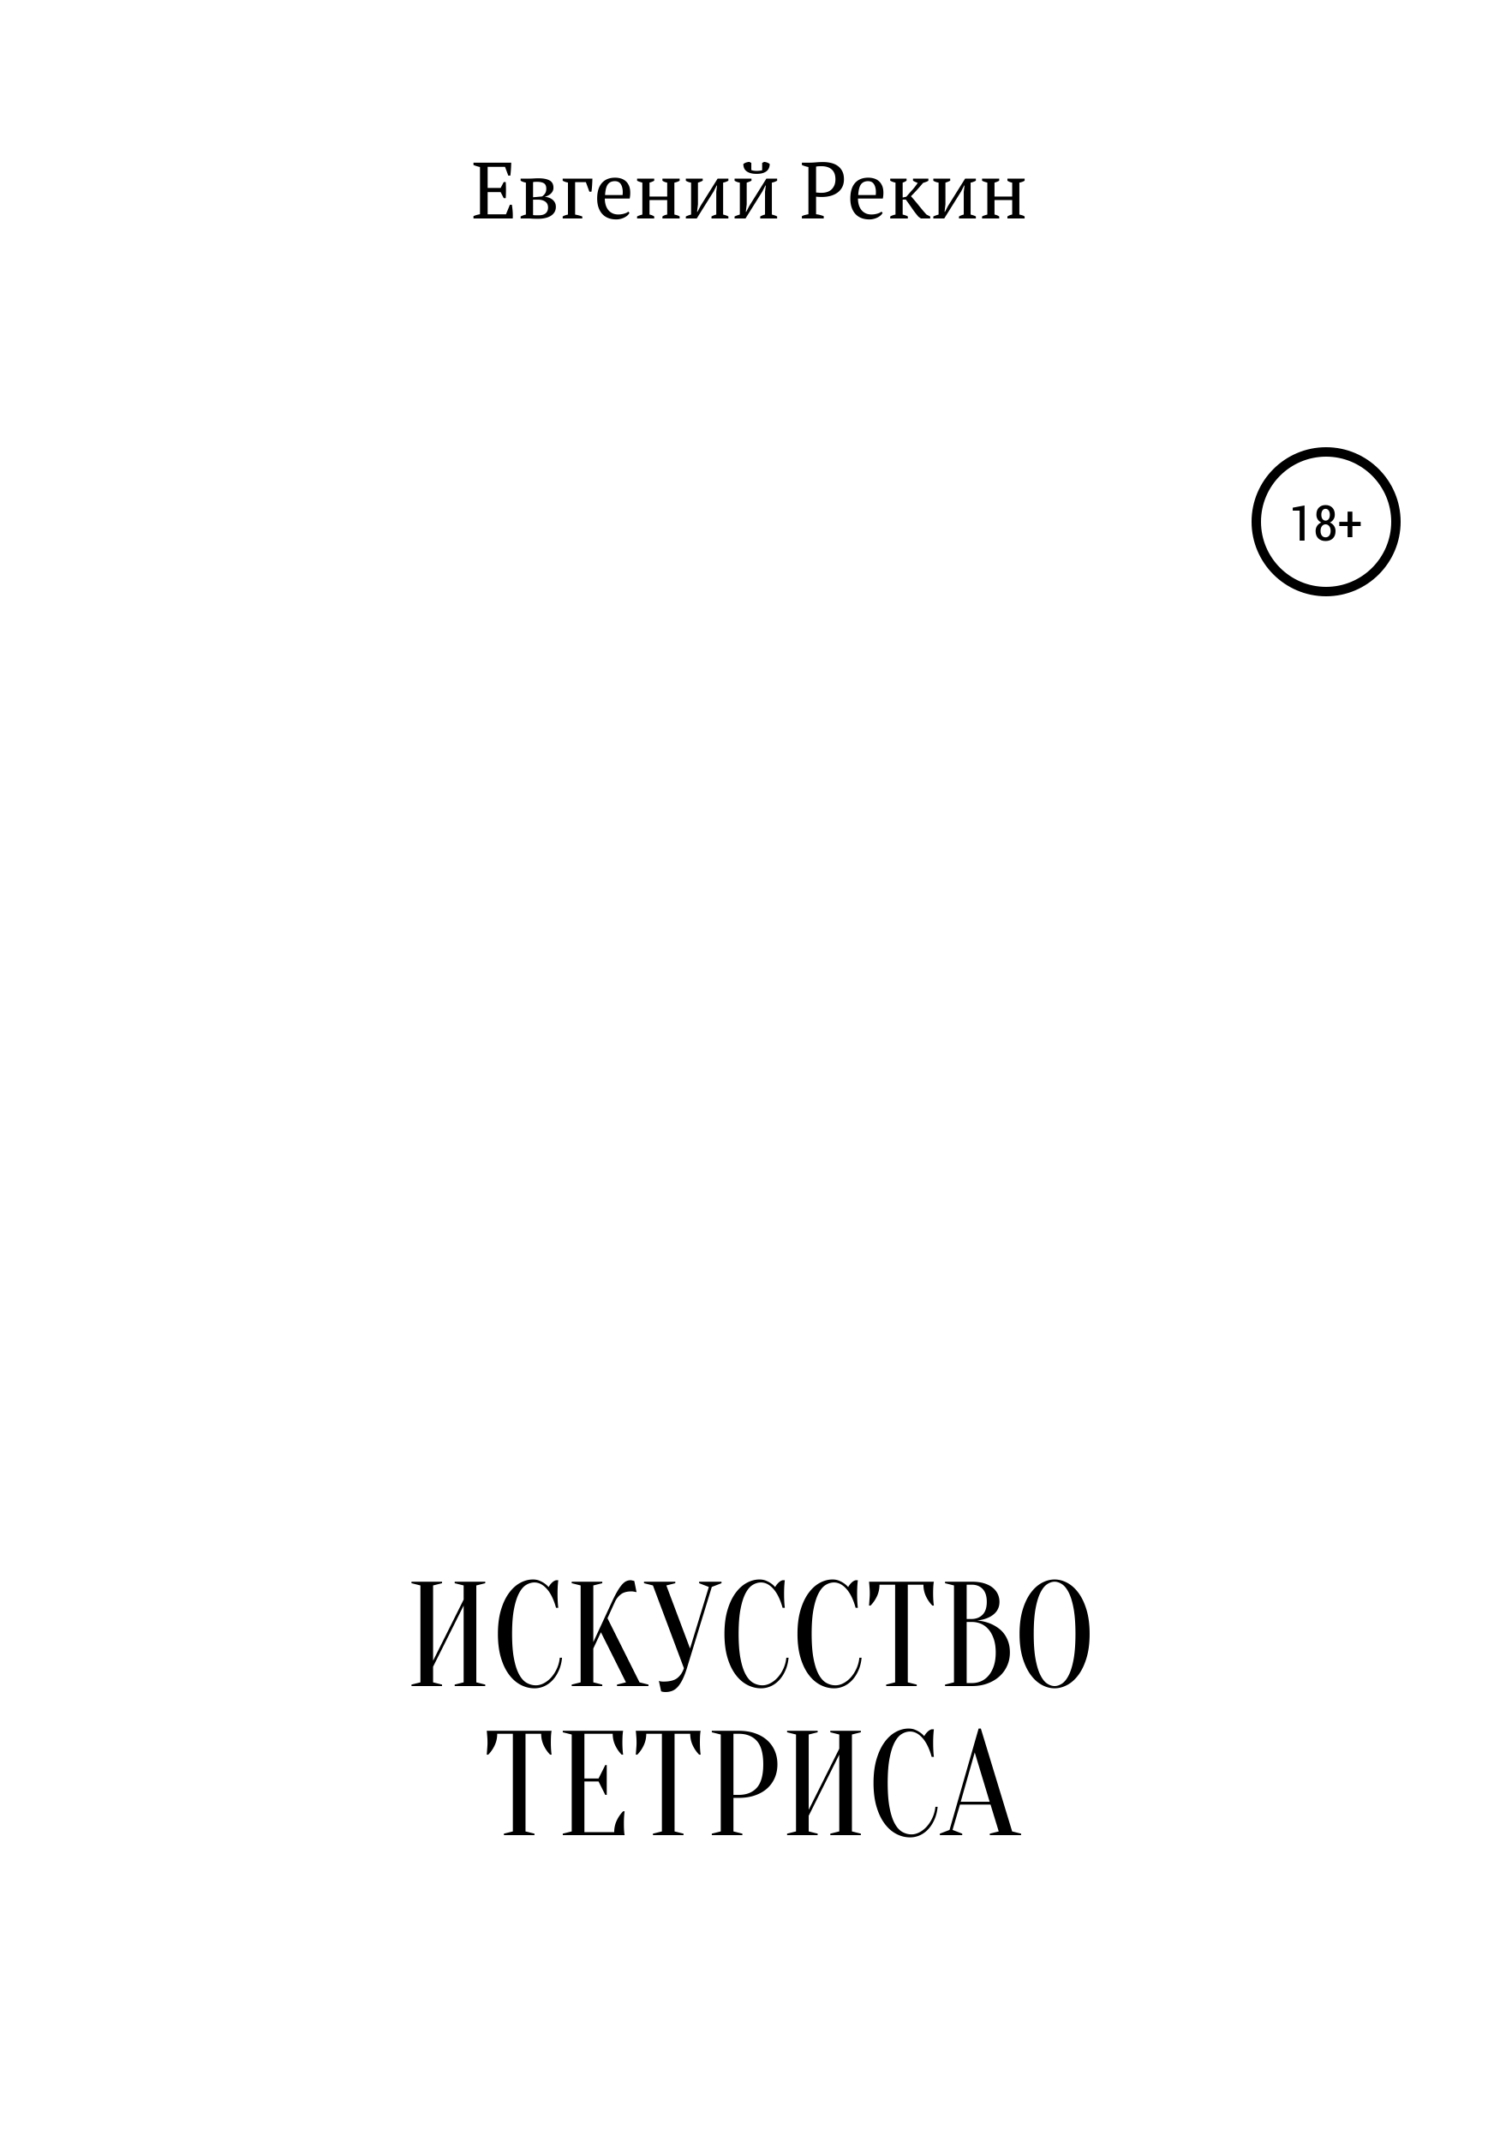 Книга Искусство тетриса из серии , созданная Евгений Рекин, может относится к жанру Личностный рост, Прочая образовательная литература. Стоимость электронной книги Искусство тетриса с идентификатором 48409380 составляет 0 руб.